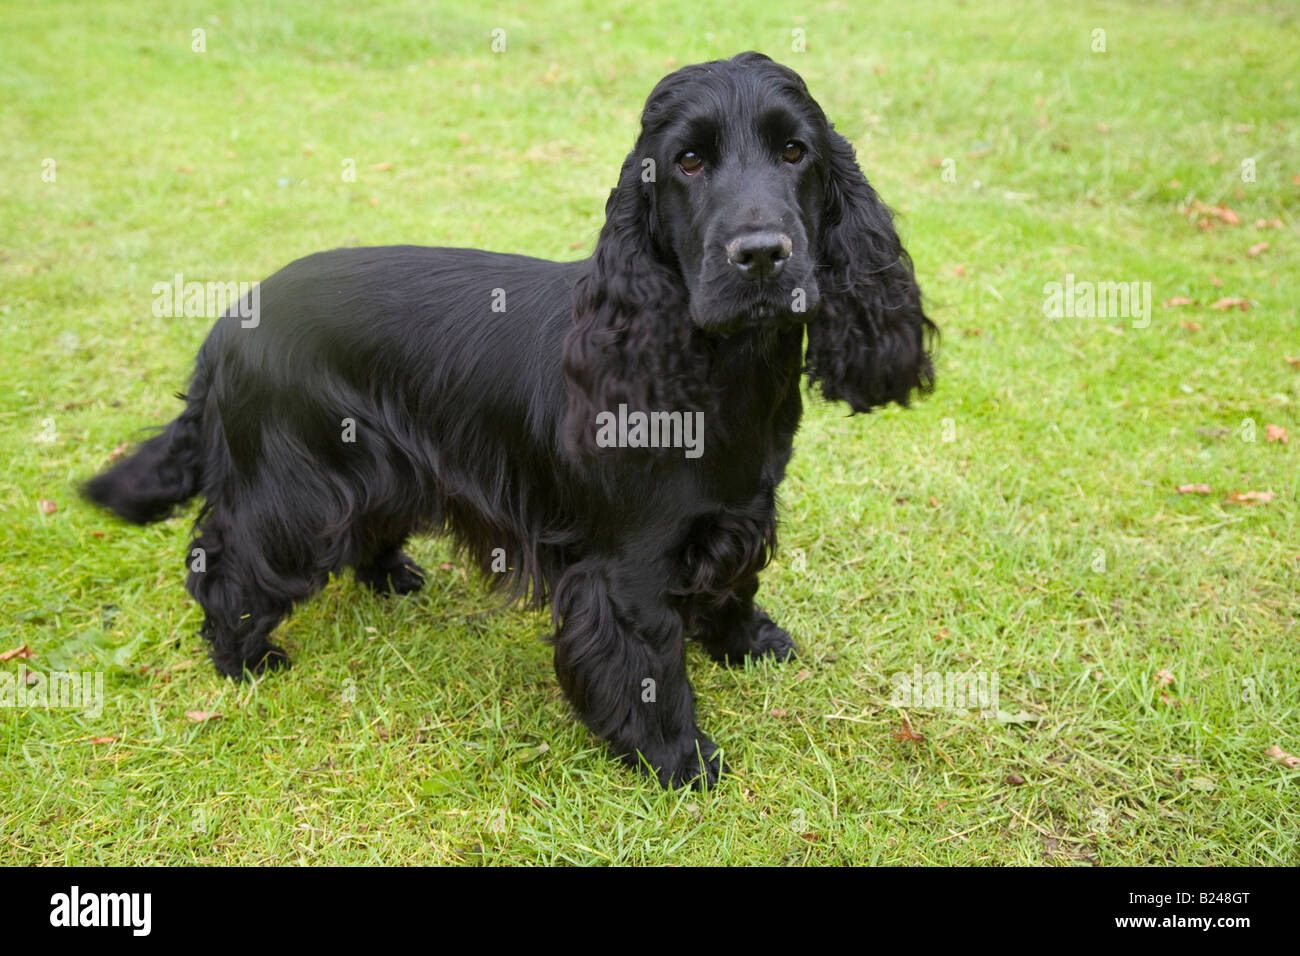 Black English Cocker Spaniel UK; eine Rasse von Waffenhund; bemerkenswert für die Herstellung einer der vielfältigsten Zahlen von Welpen in einem Wurf unter Hunderassen. Stockfoto